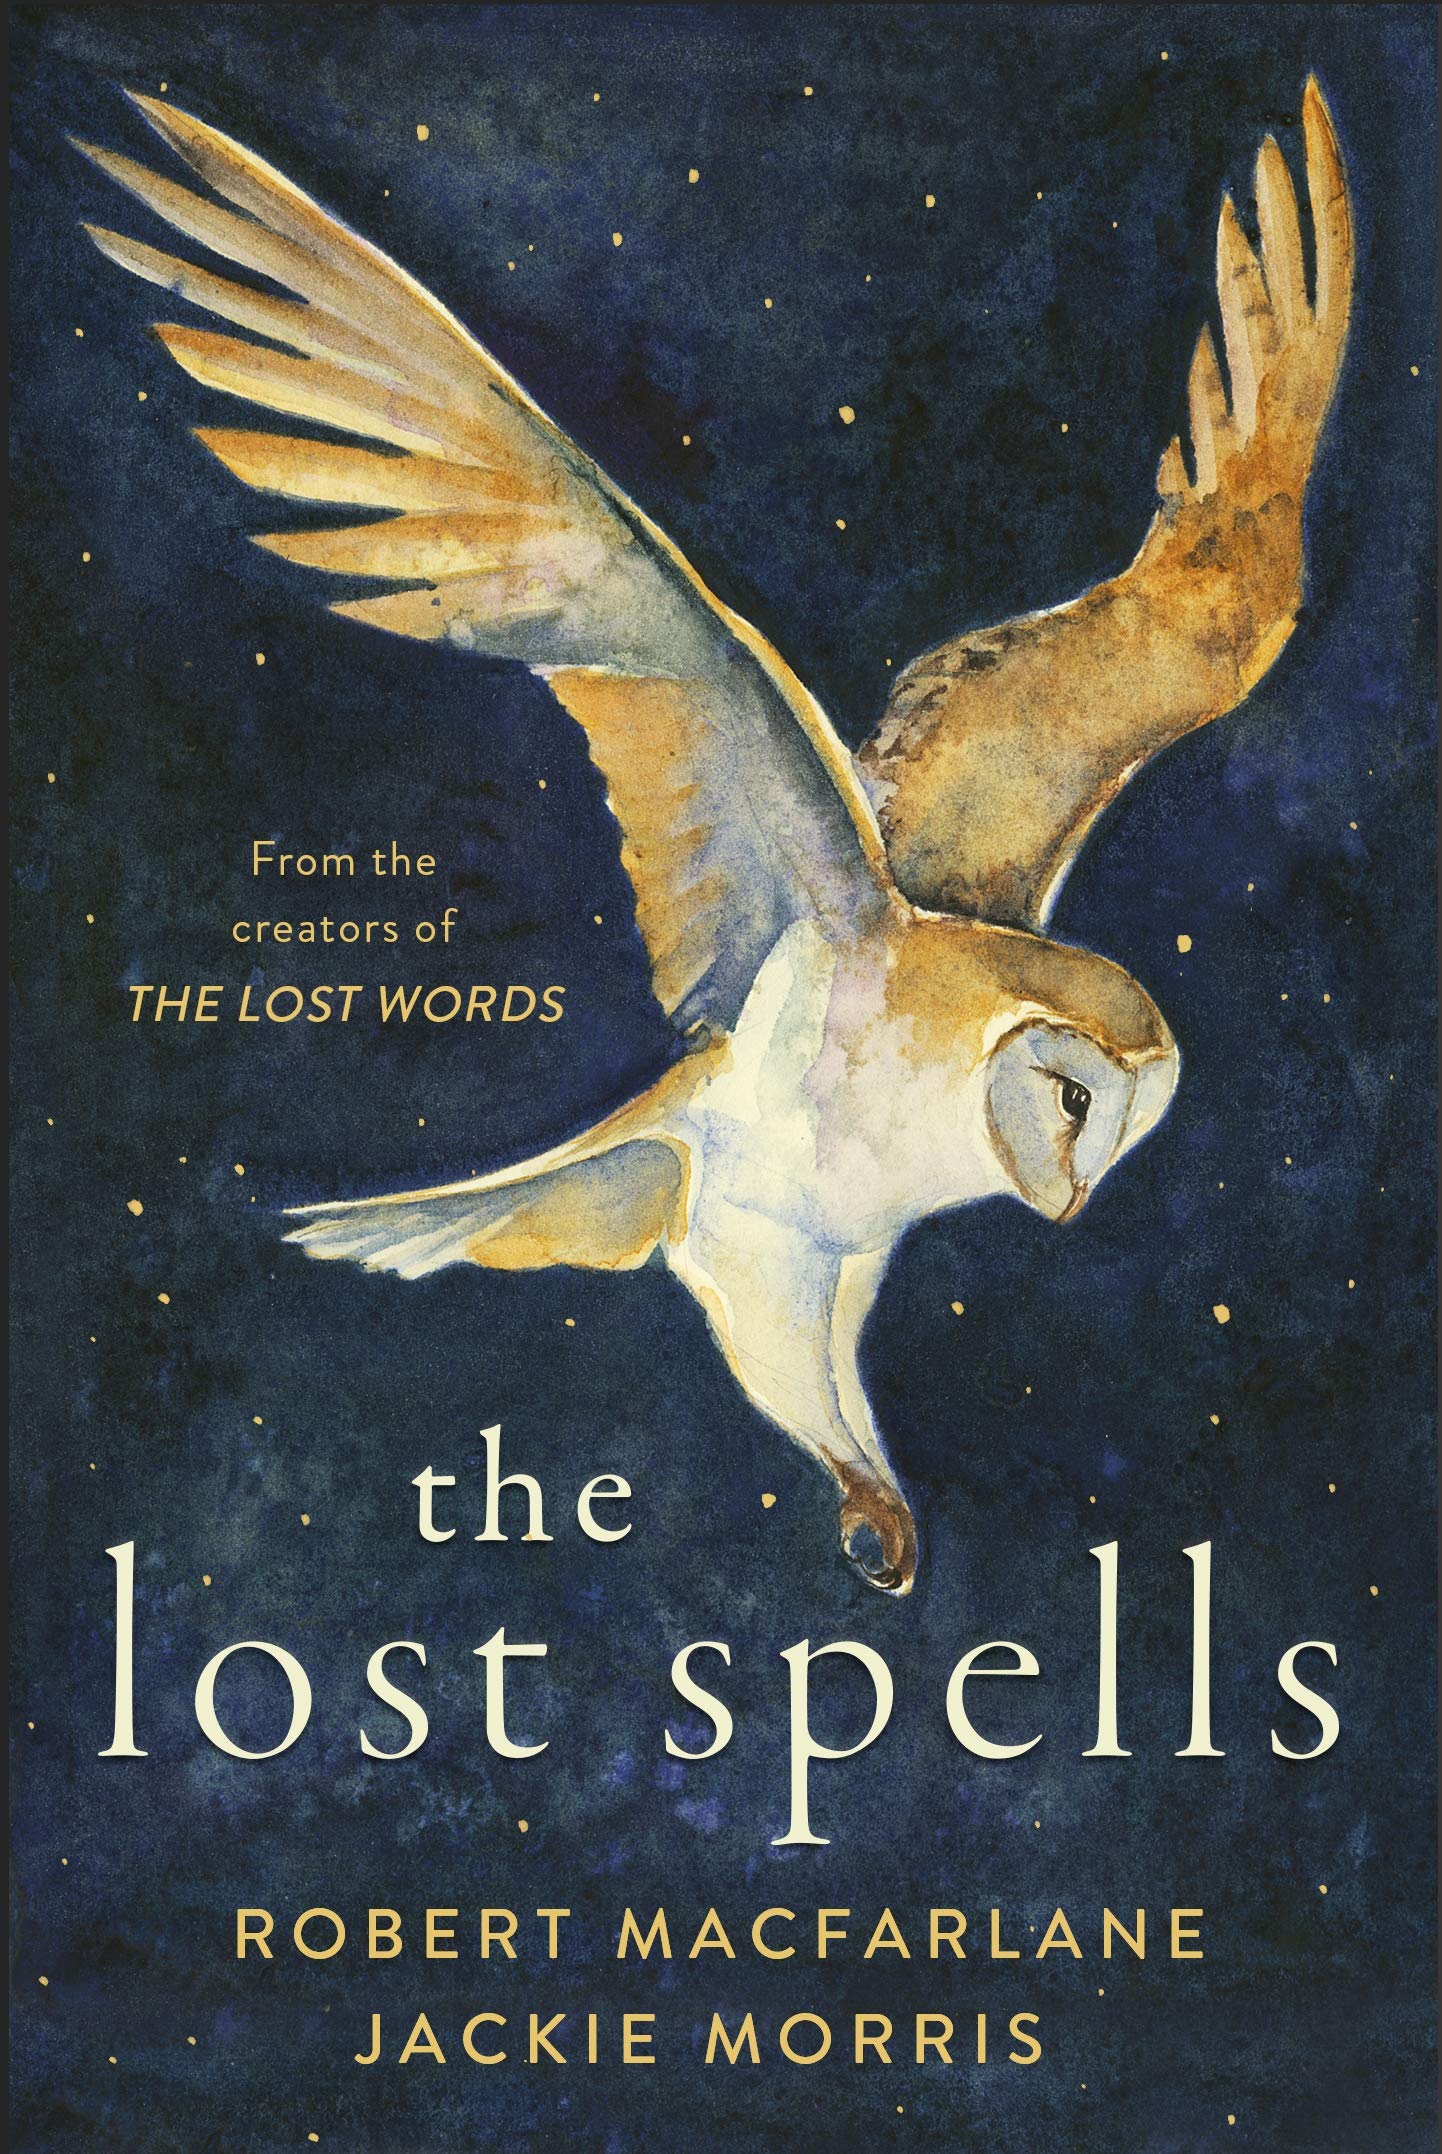 The Lost Spells by Robert Macfarlane & Jackie Morris